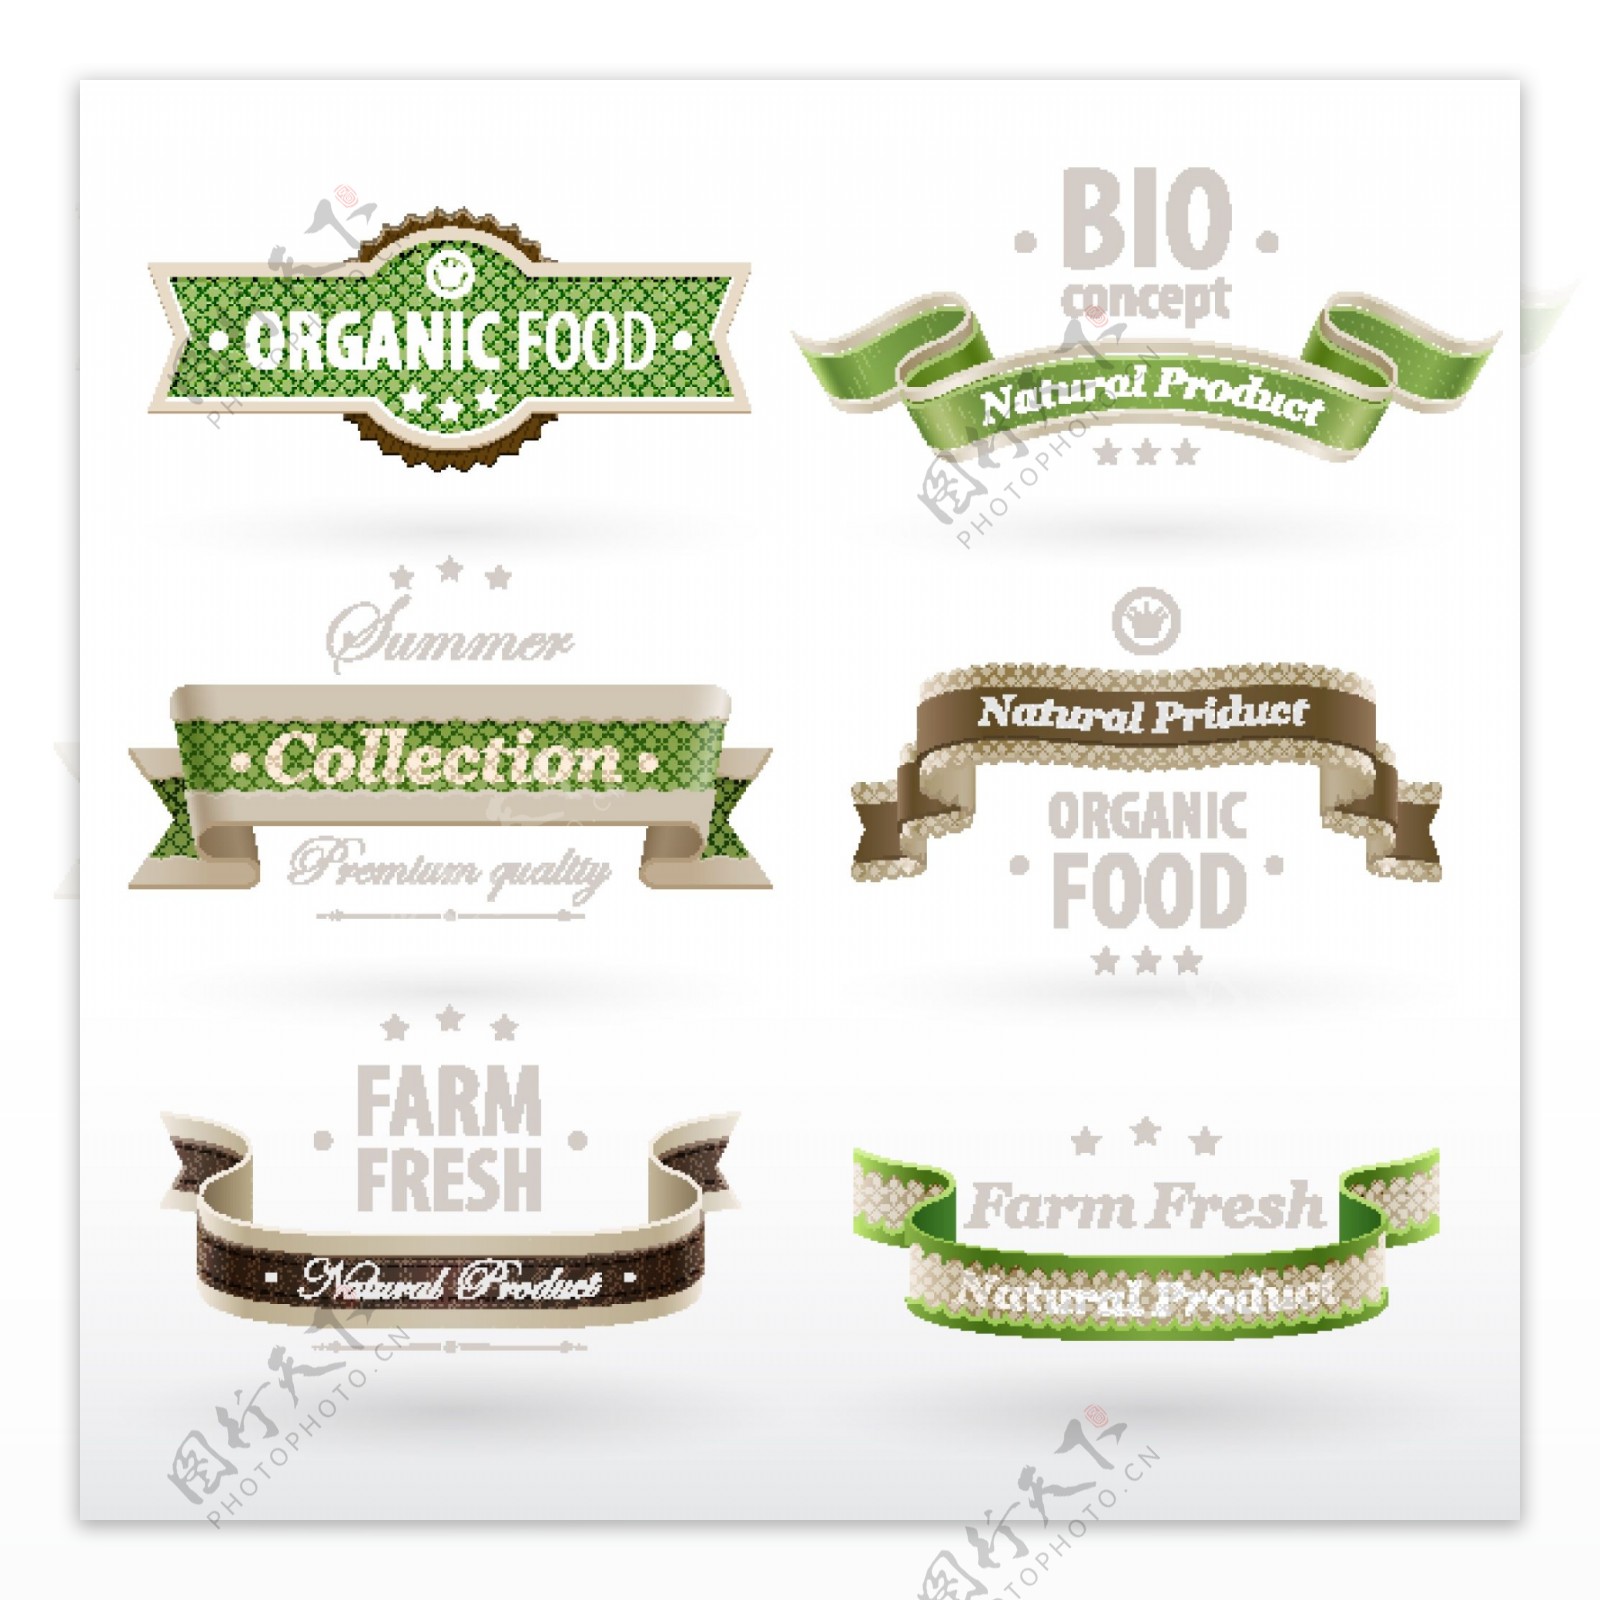 原生态食品标签图片